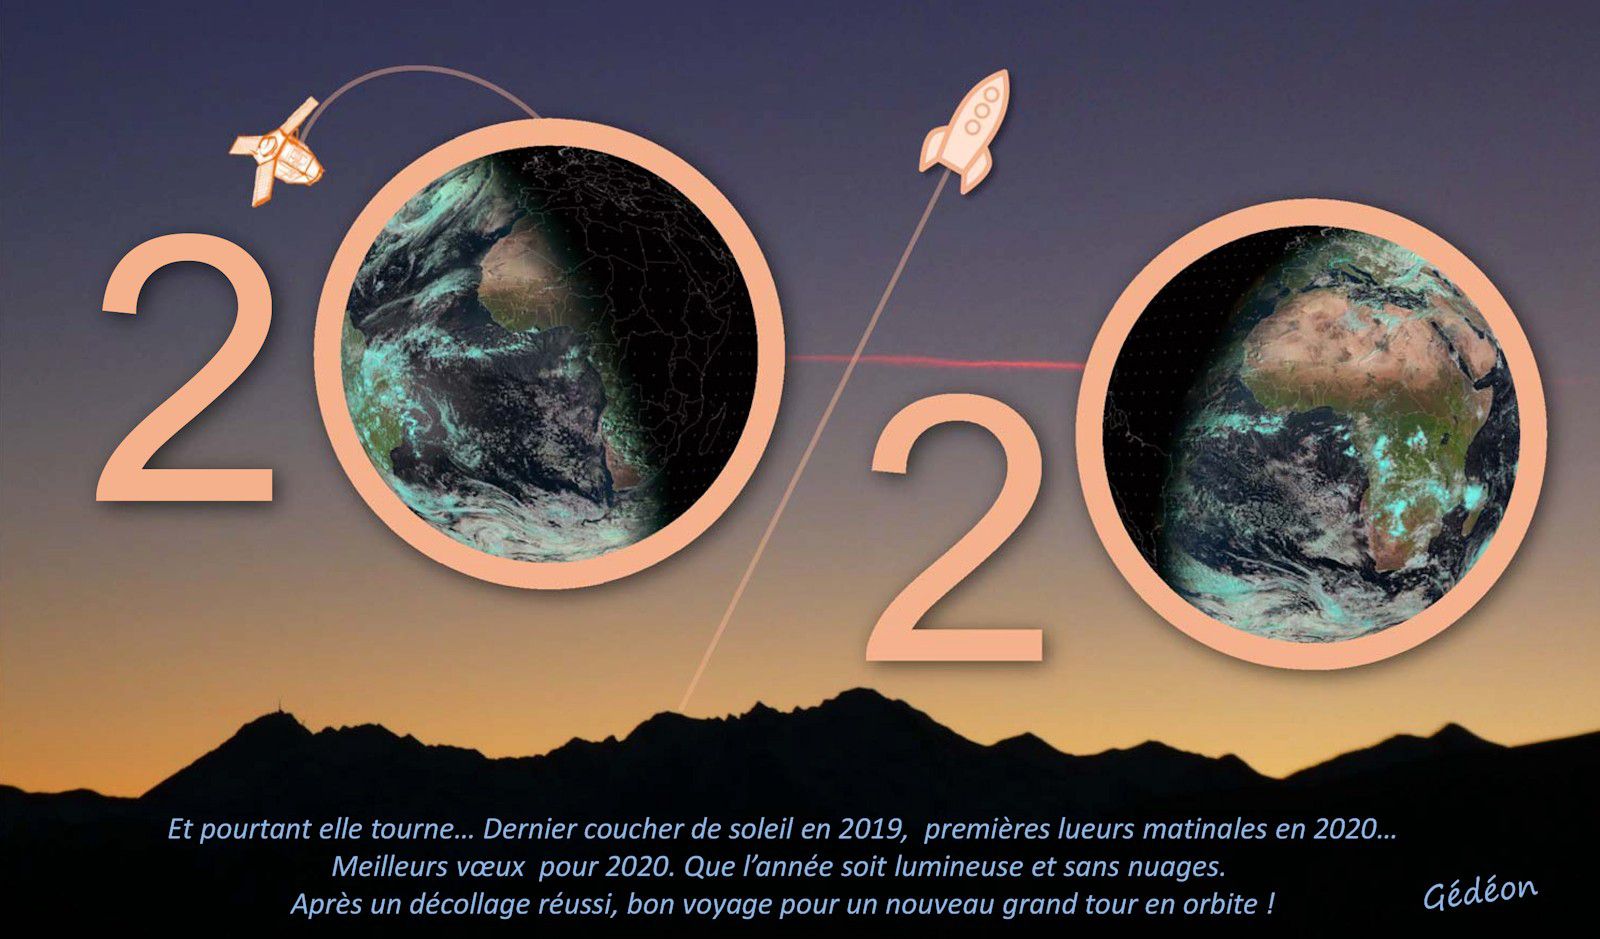 Voeux - vœux - Season's greetings - 2020 - Un autre regard sur la Terre - Meteosat - Best wishes - nombre auto-descriptif - Nouvel an - Carte de voeux -